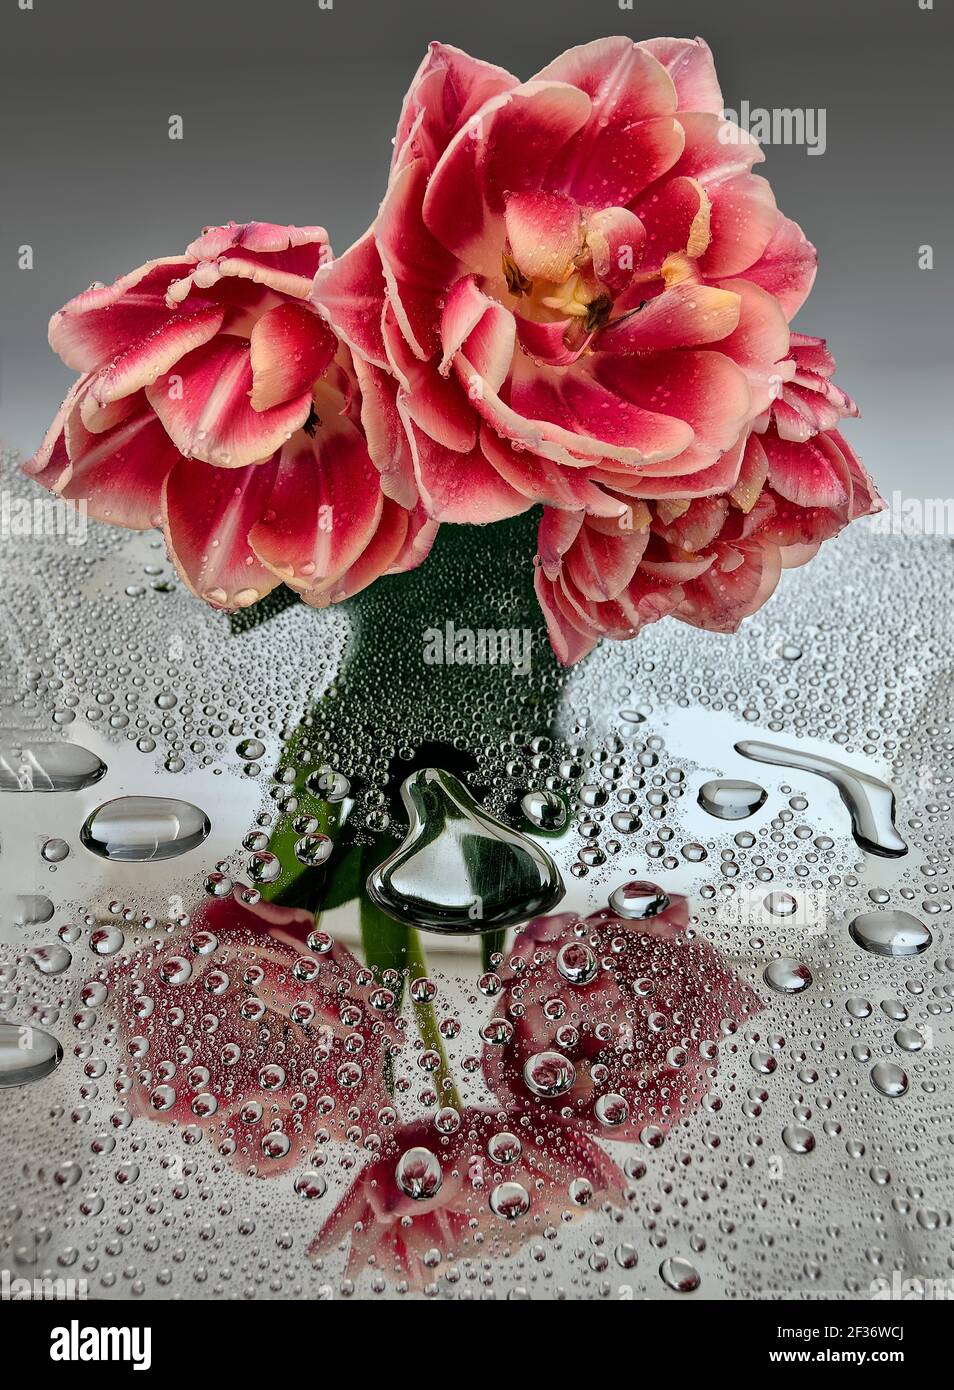 Drei bunte rosa weiße Tulpen mit Wassertropfen und Spiegelung auf der Spiegeloberfläche. Künstlerisches Bild von Frühlingsnatur Frische und Reinheit. Romantisch Stockfoto